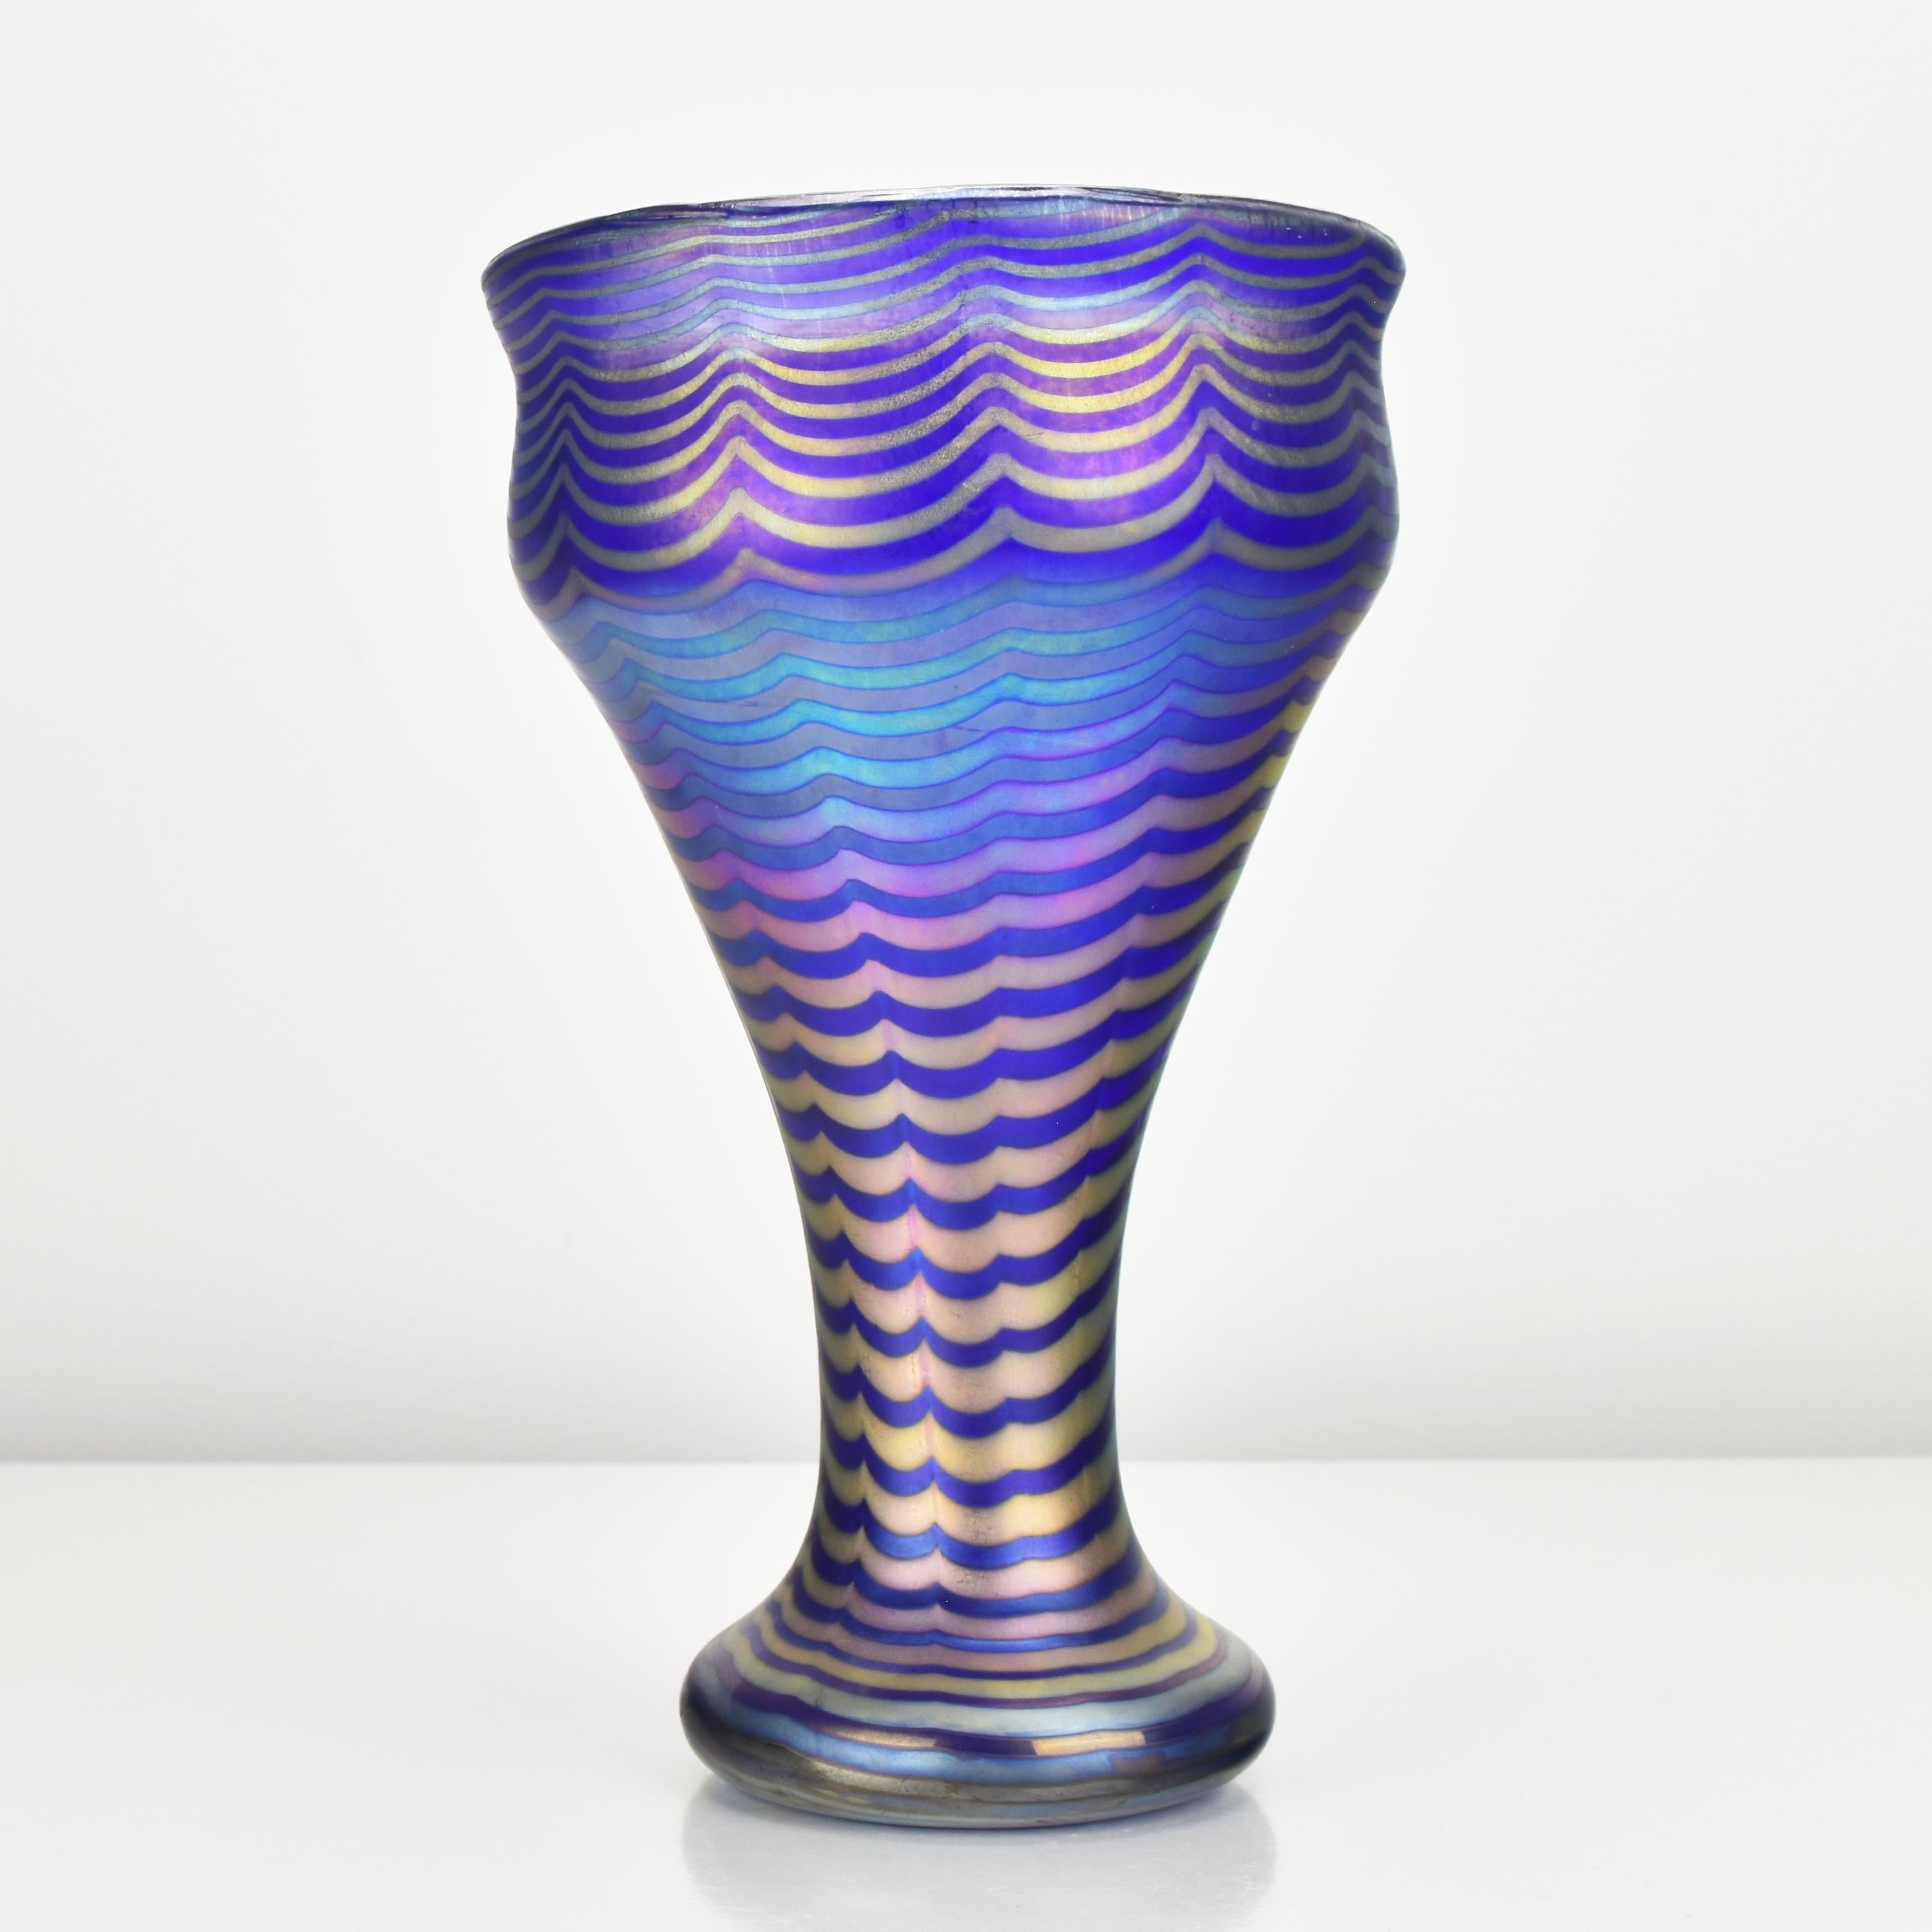 Vase ancien en verre d'art de forme calice Art Nouveau créé par la verrerie Loetz, active à la fin du 19ème et au début du 20ème siècle, ce vase représente un exemple parfait de leur maîtrise artistique.

Le fond du vase est bleu cobalt, ce qui